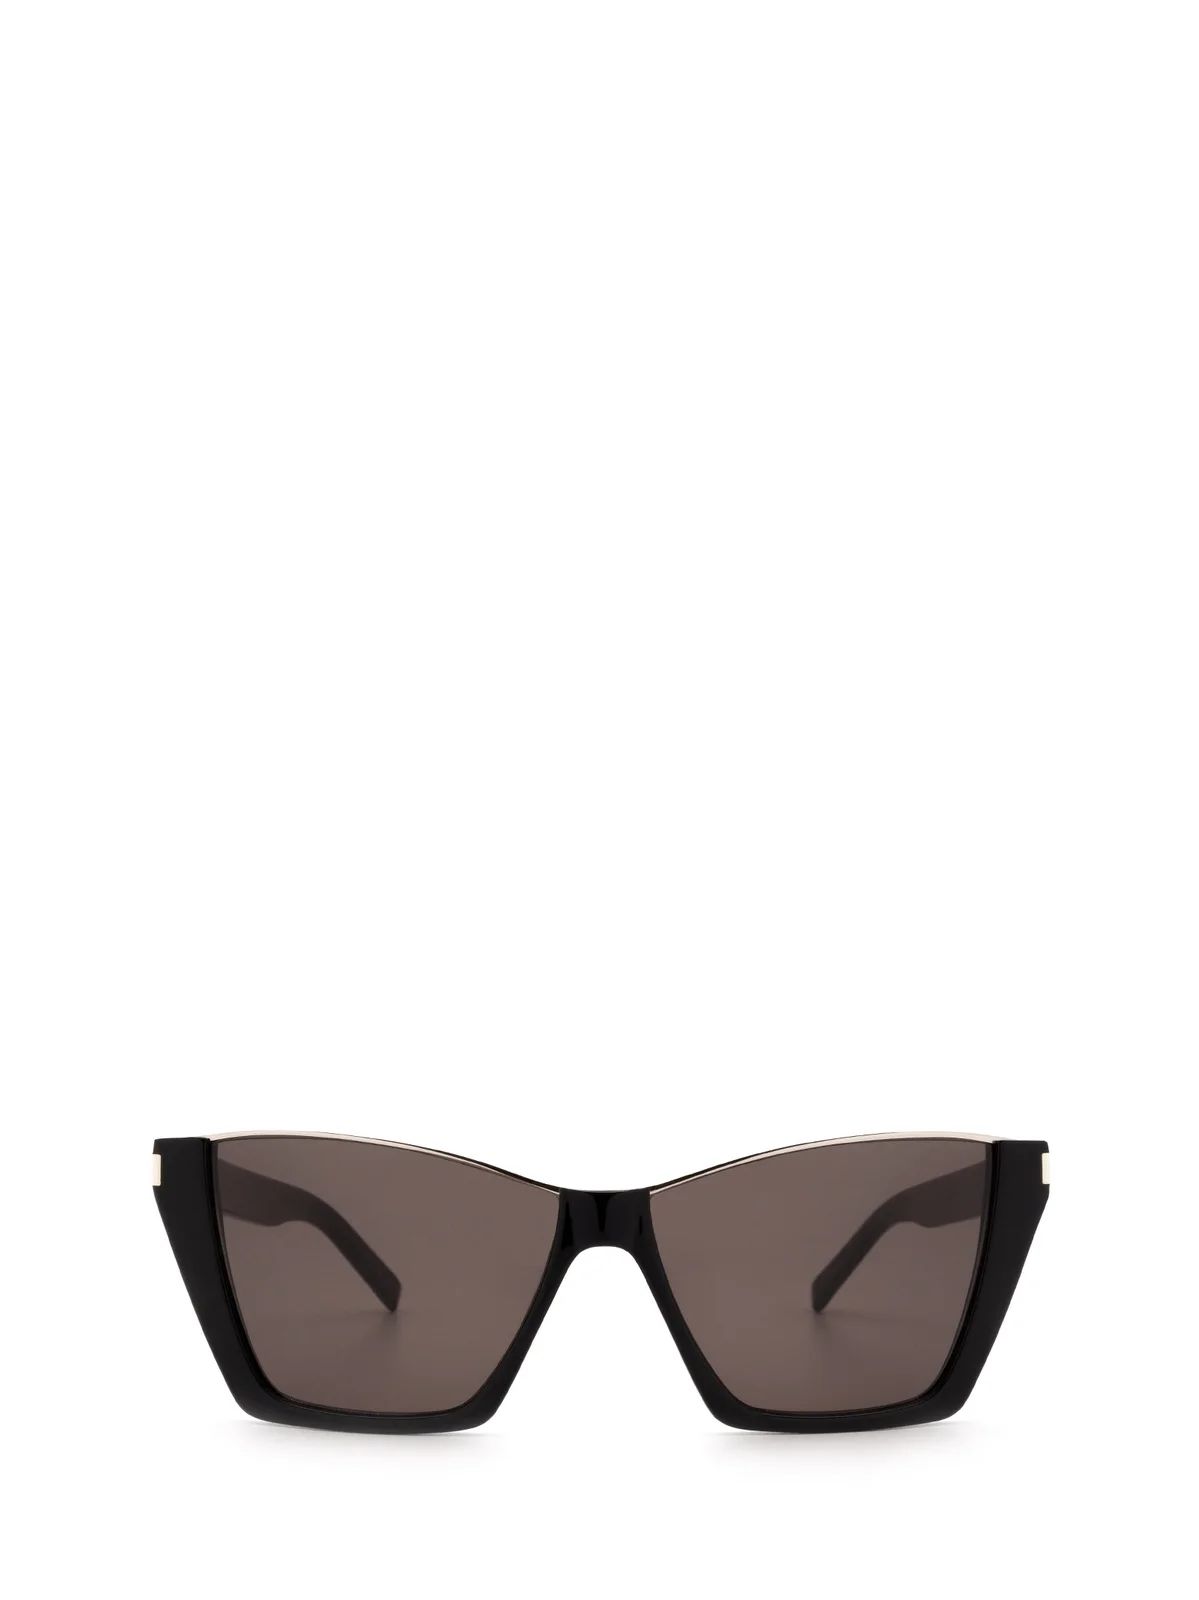 Saint Laurent Eyewear Kate Sunglasses | Cettire Global